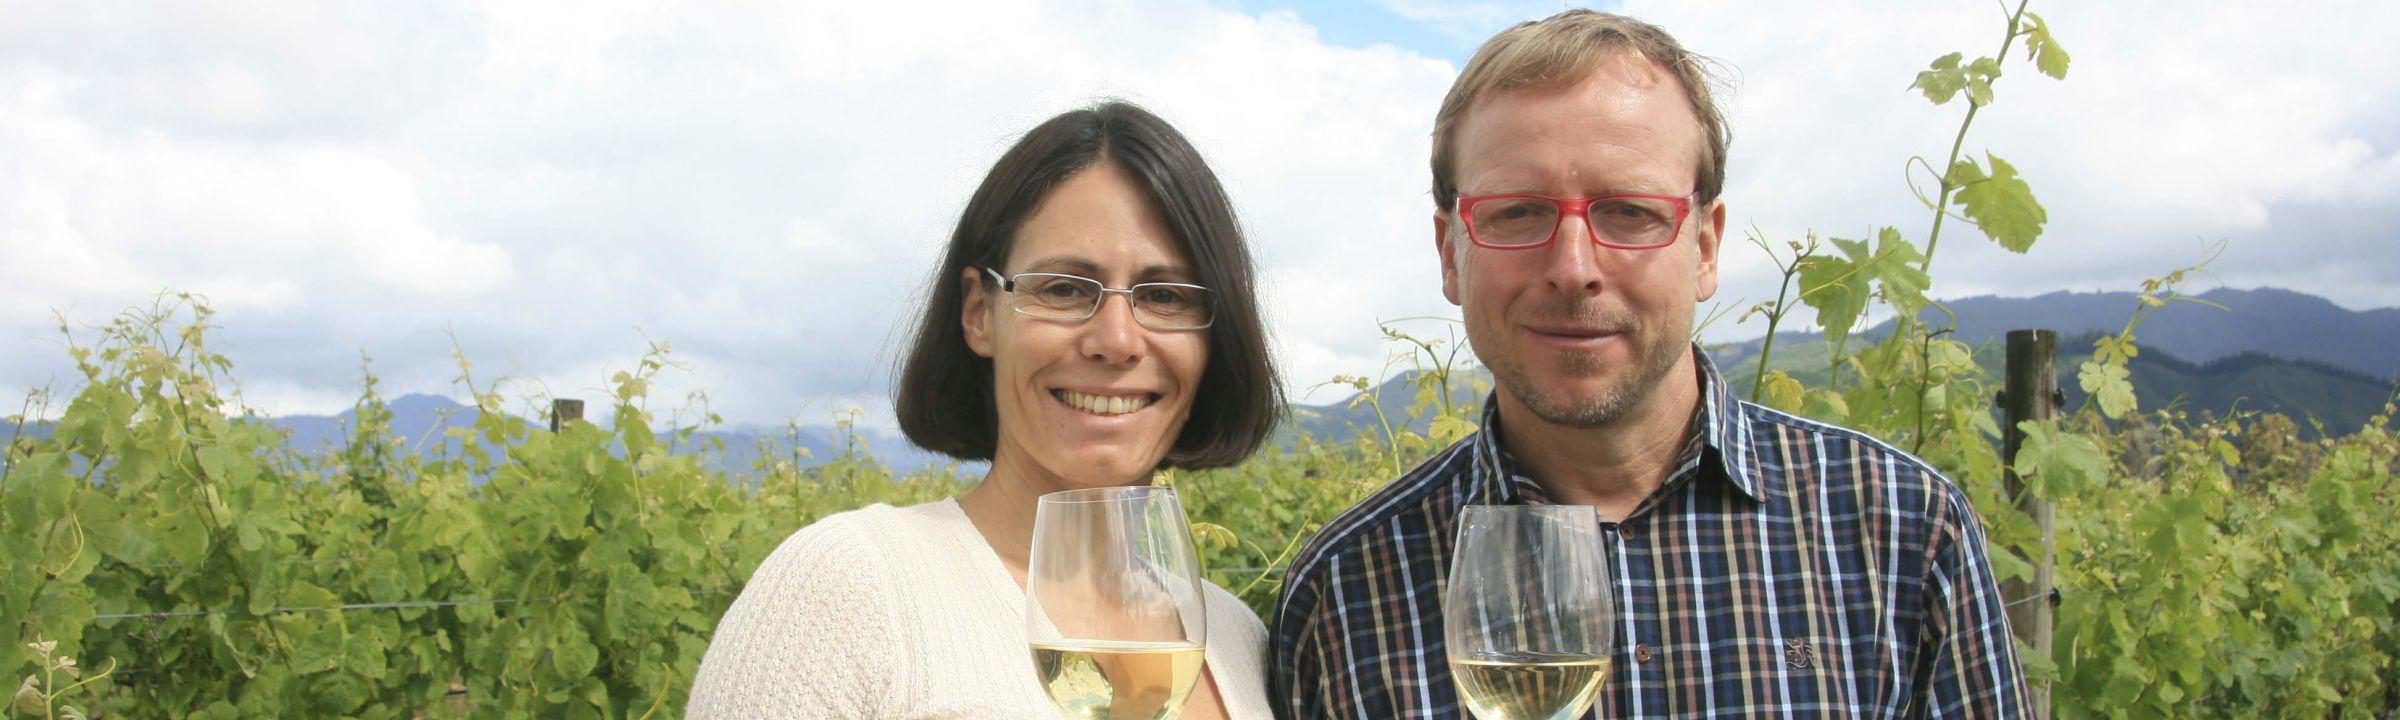 Spitzenklasse! Warum neuseeländischer Wein so erfolgreich ist. Das Interview!